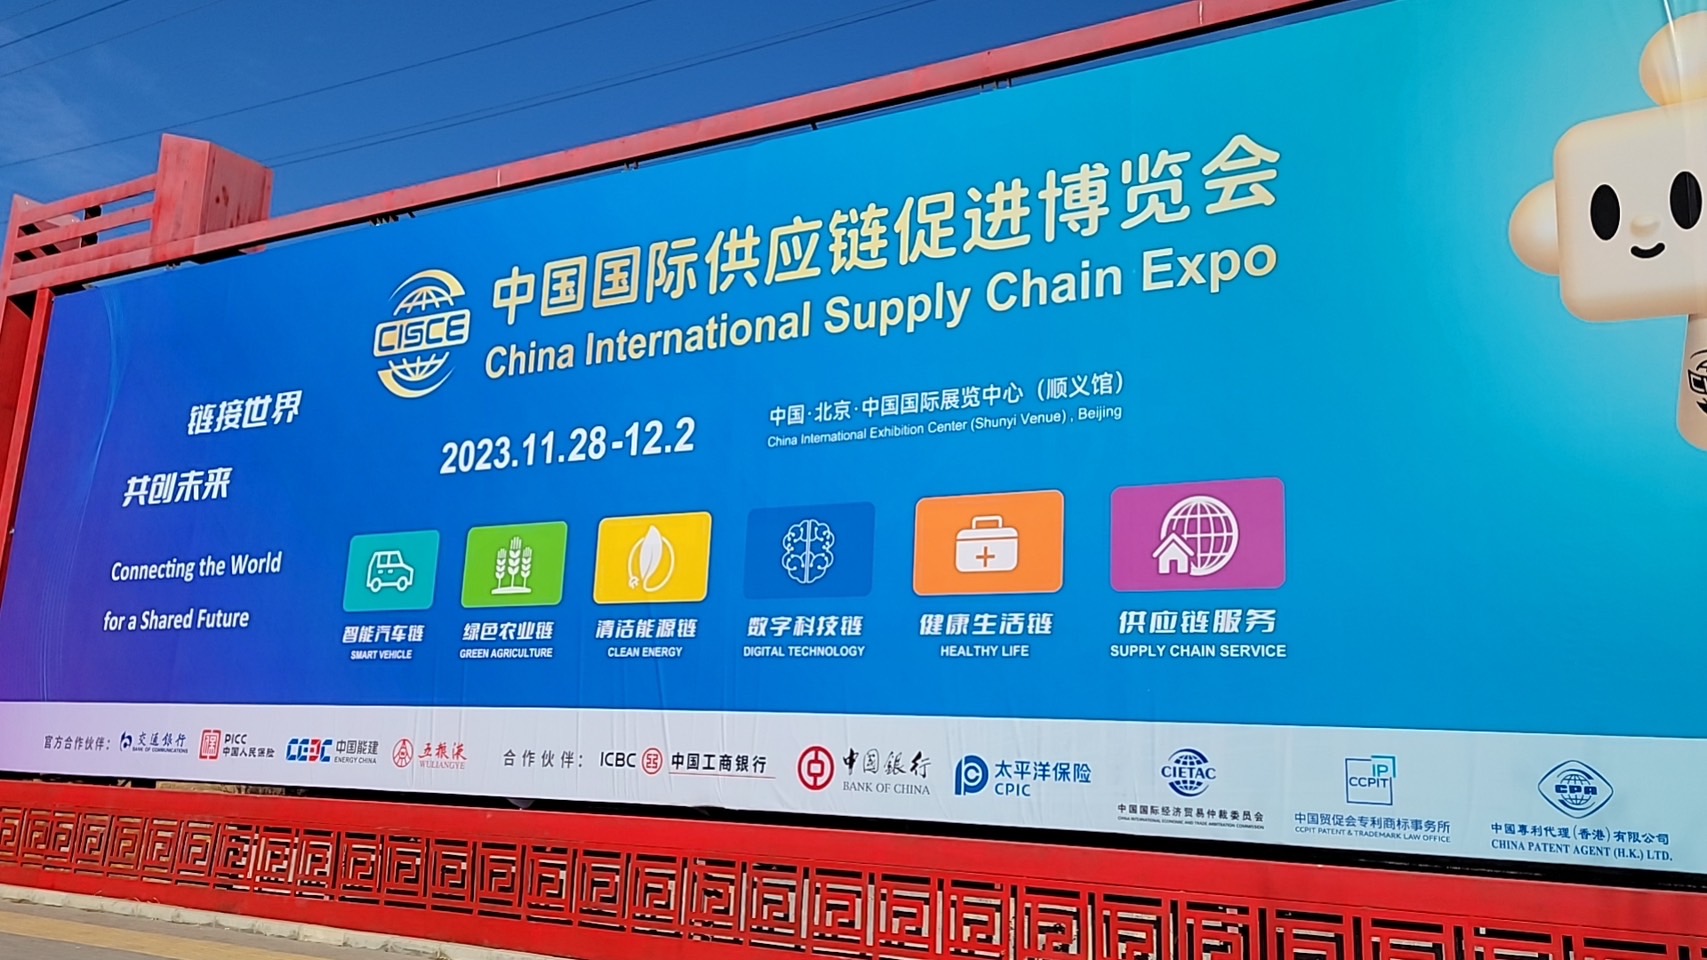 China (Beijing) International Supply Chain Expo!